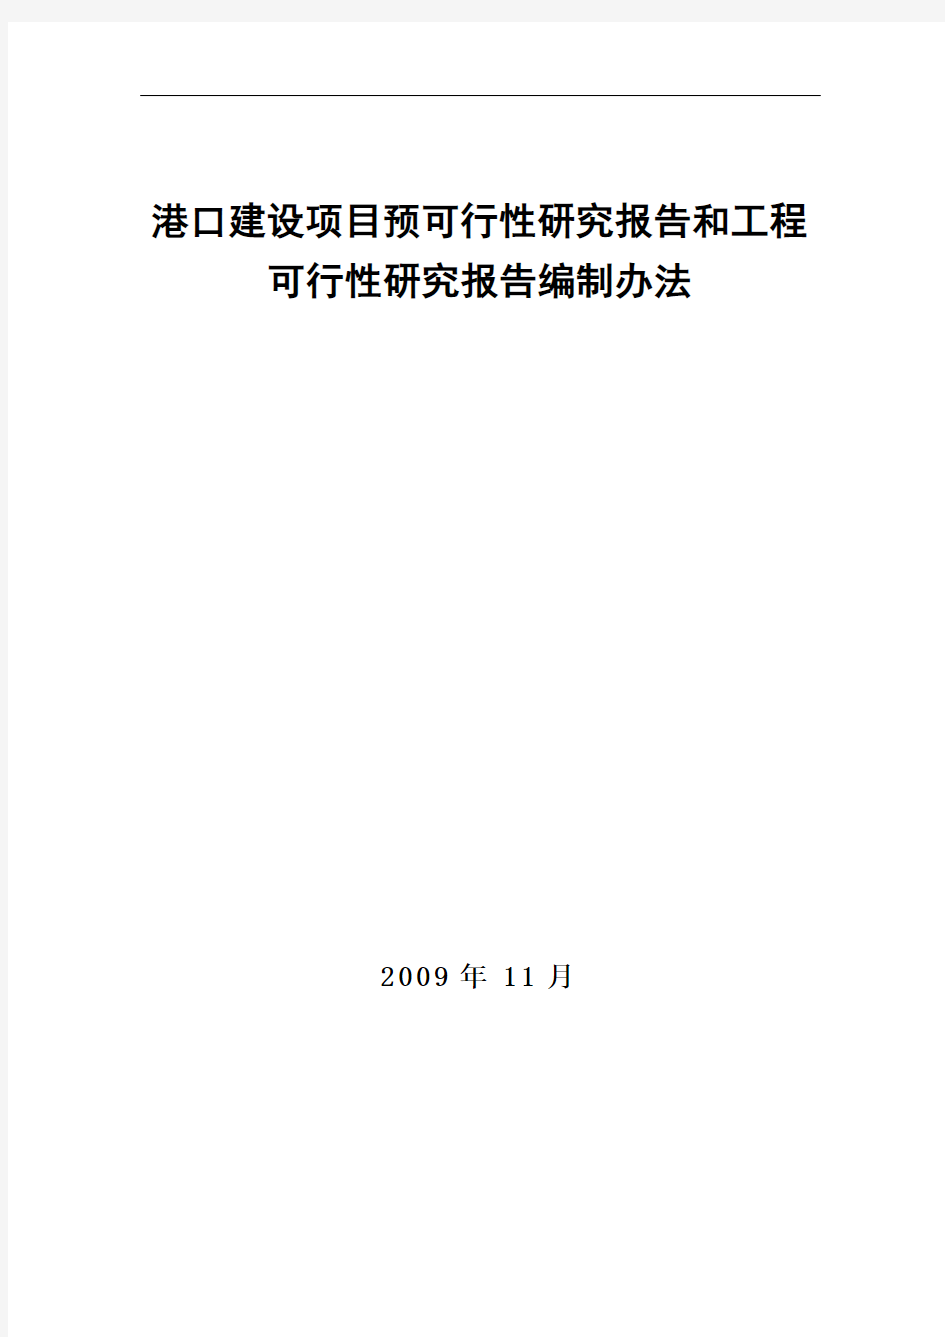 港口建设项目预可行性研究报告和工程可行性研究报告编制办法(交规划发〔2009〕712号)